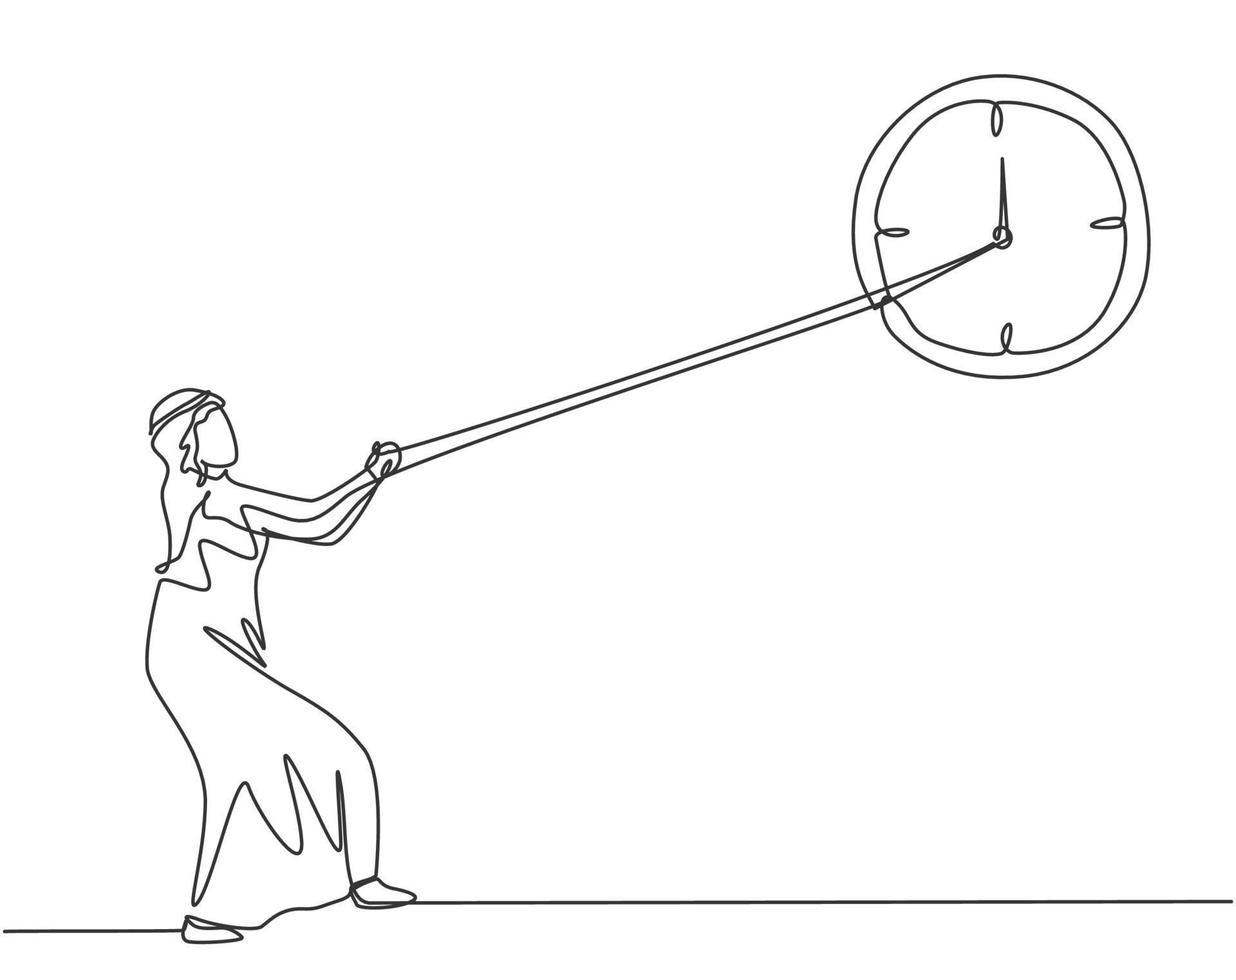 disegno a linea continua singolo giovane uomo d'affari arabo che tira in senso orario del grande orologio da parete analogico con corda. concetto di metafora della gestione del tempo. una linea disegnare grafica vettoriale illustrazione grafica.